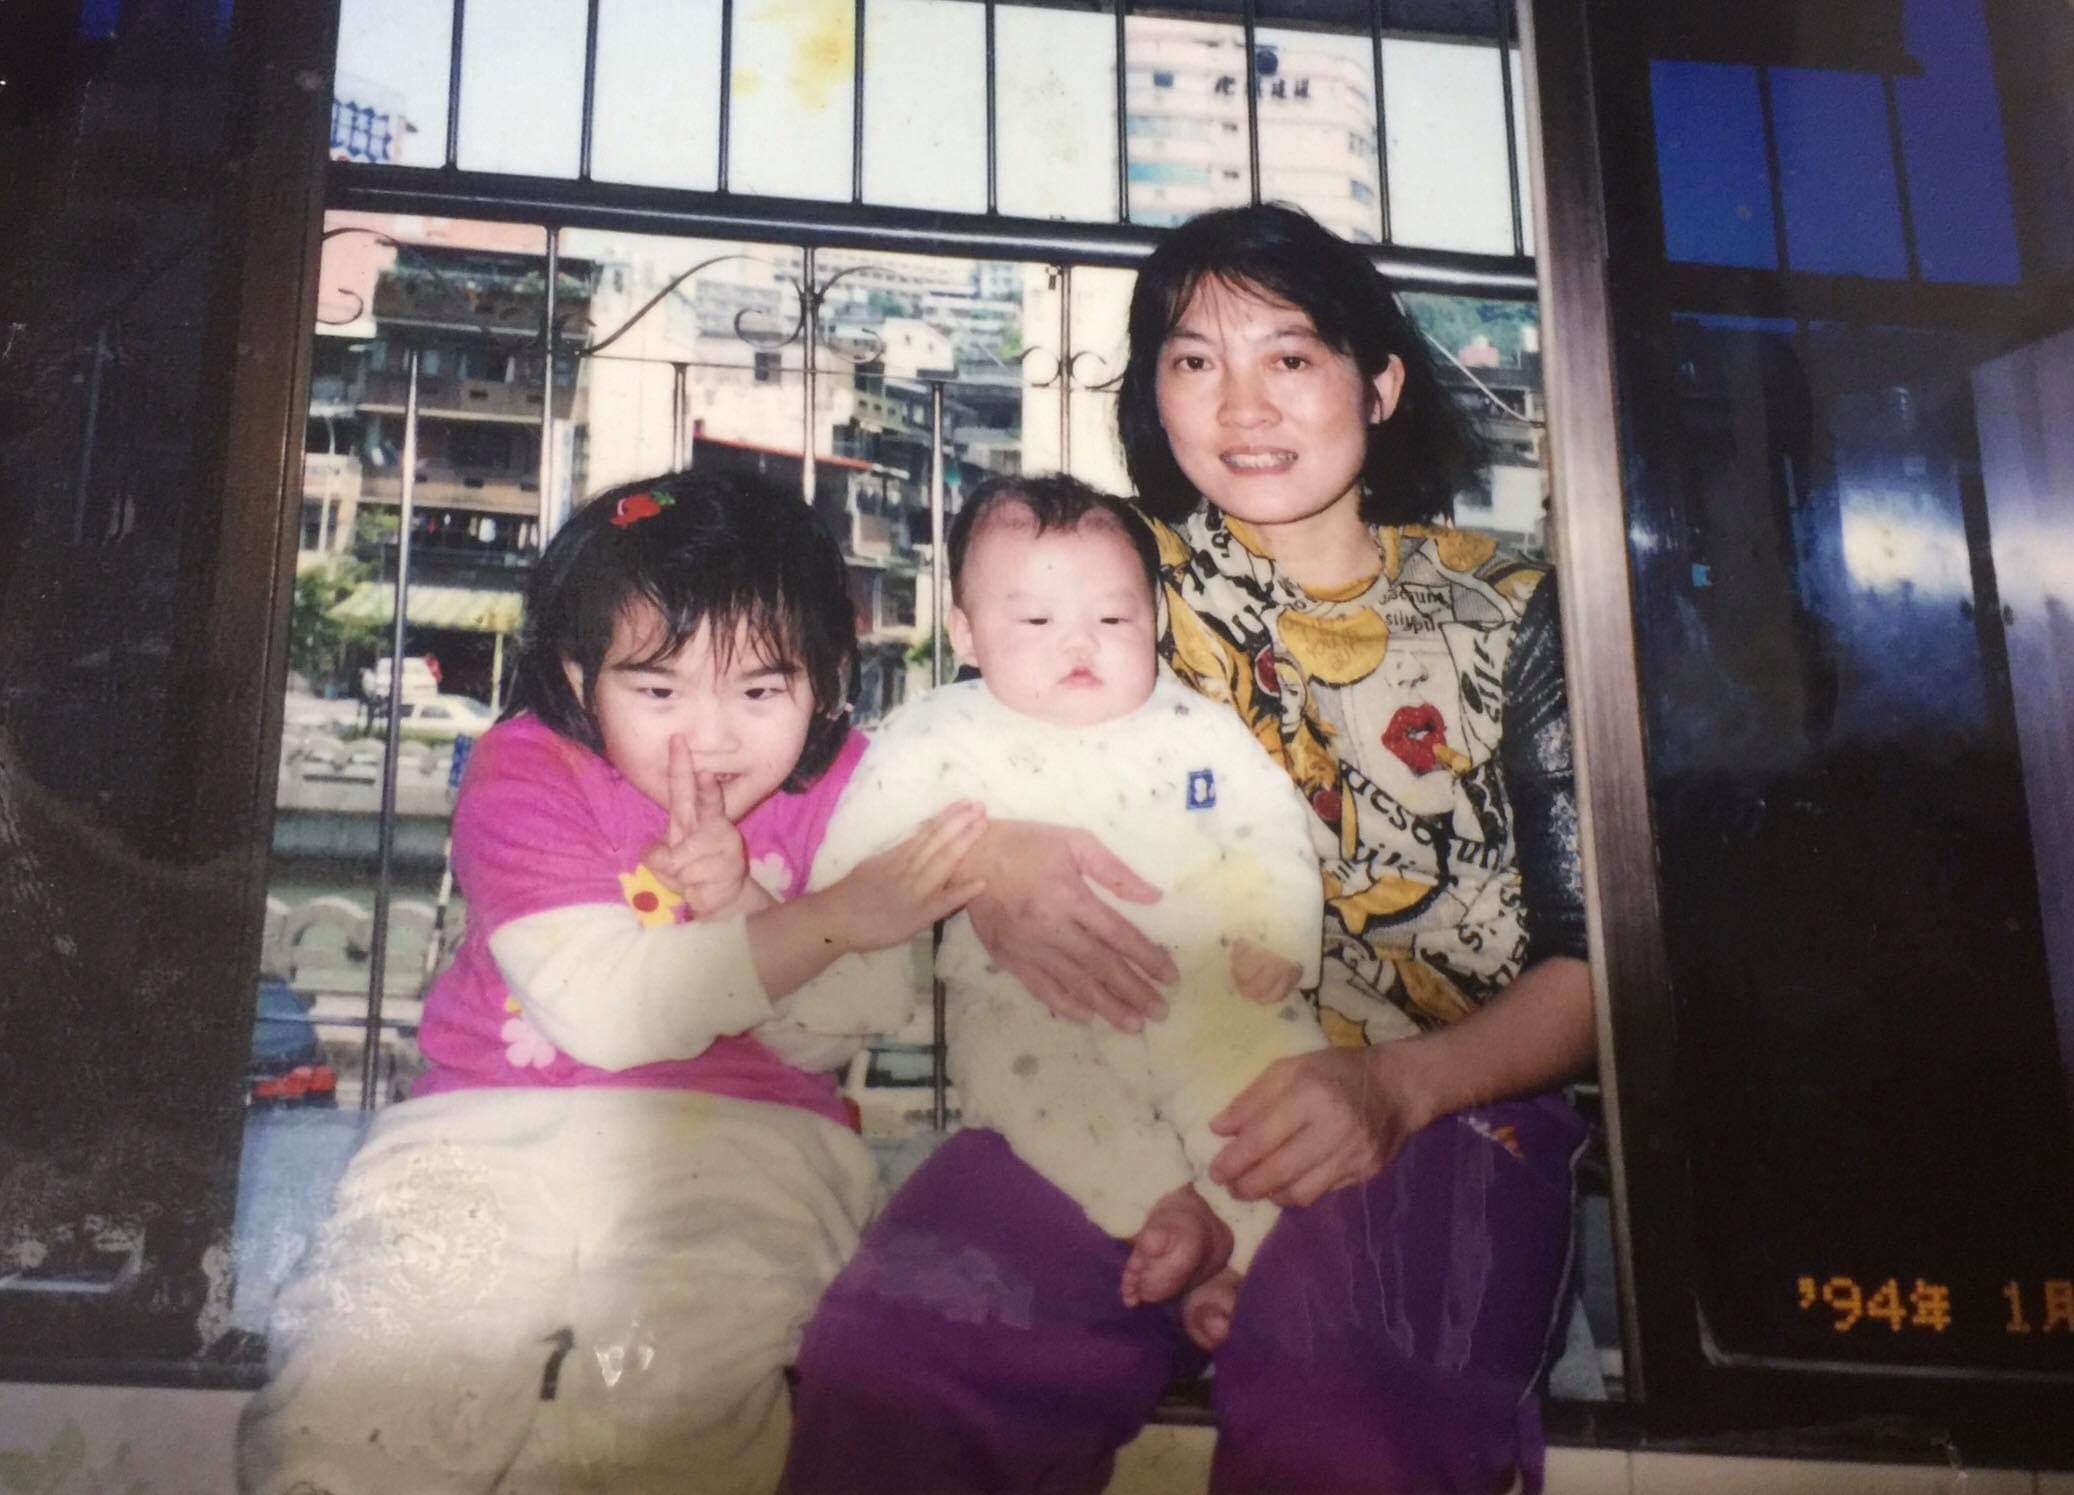 Cô gái Đài Loan xúc động gặp lại ‘mẹ Việt’ sau nhiều năm đi tìm